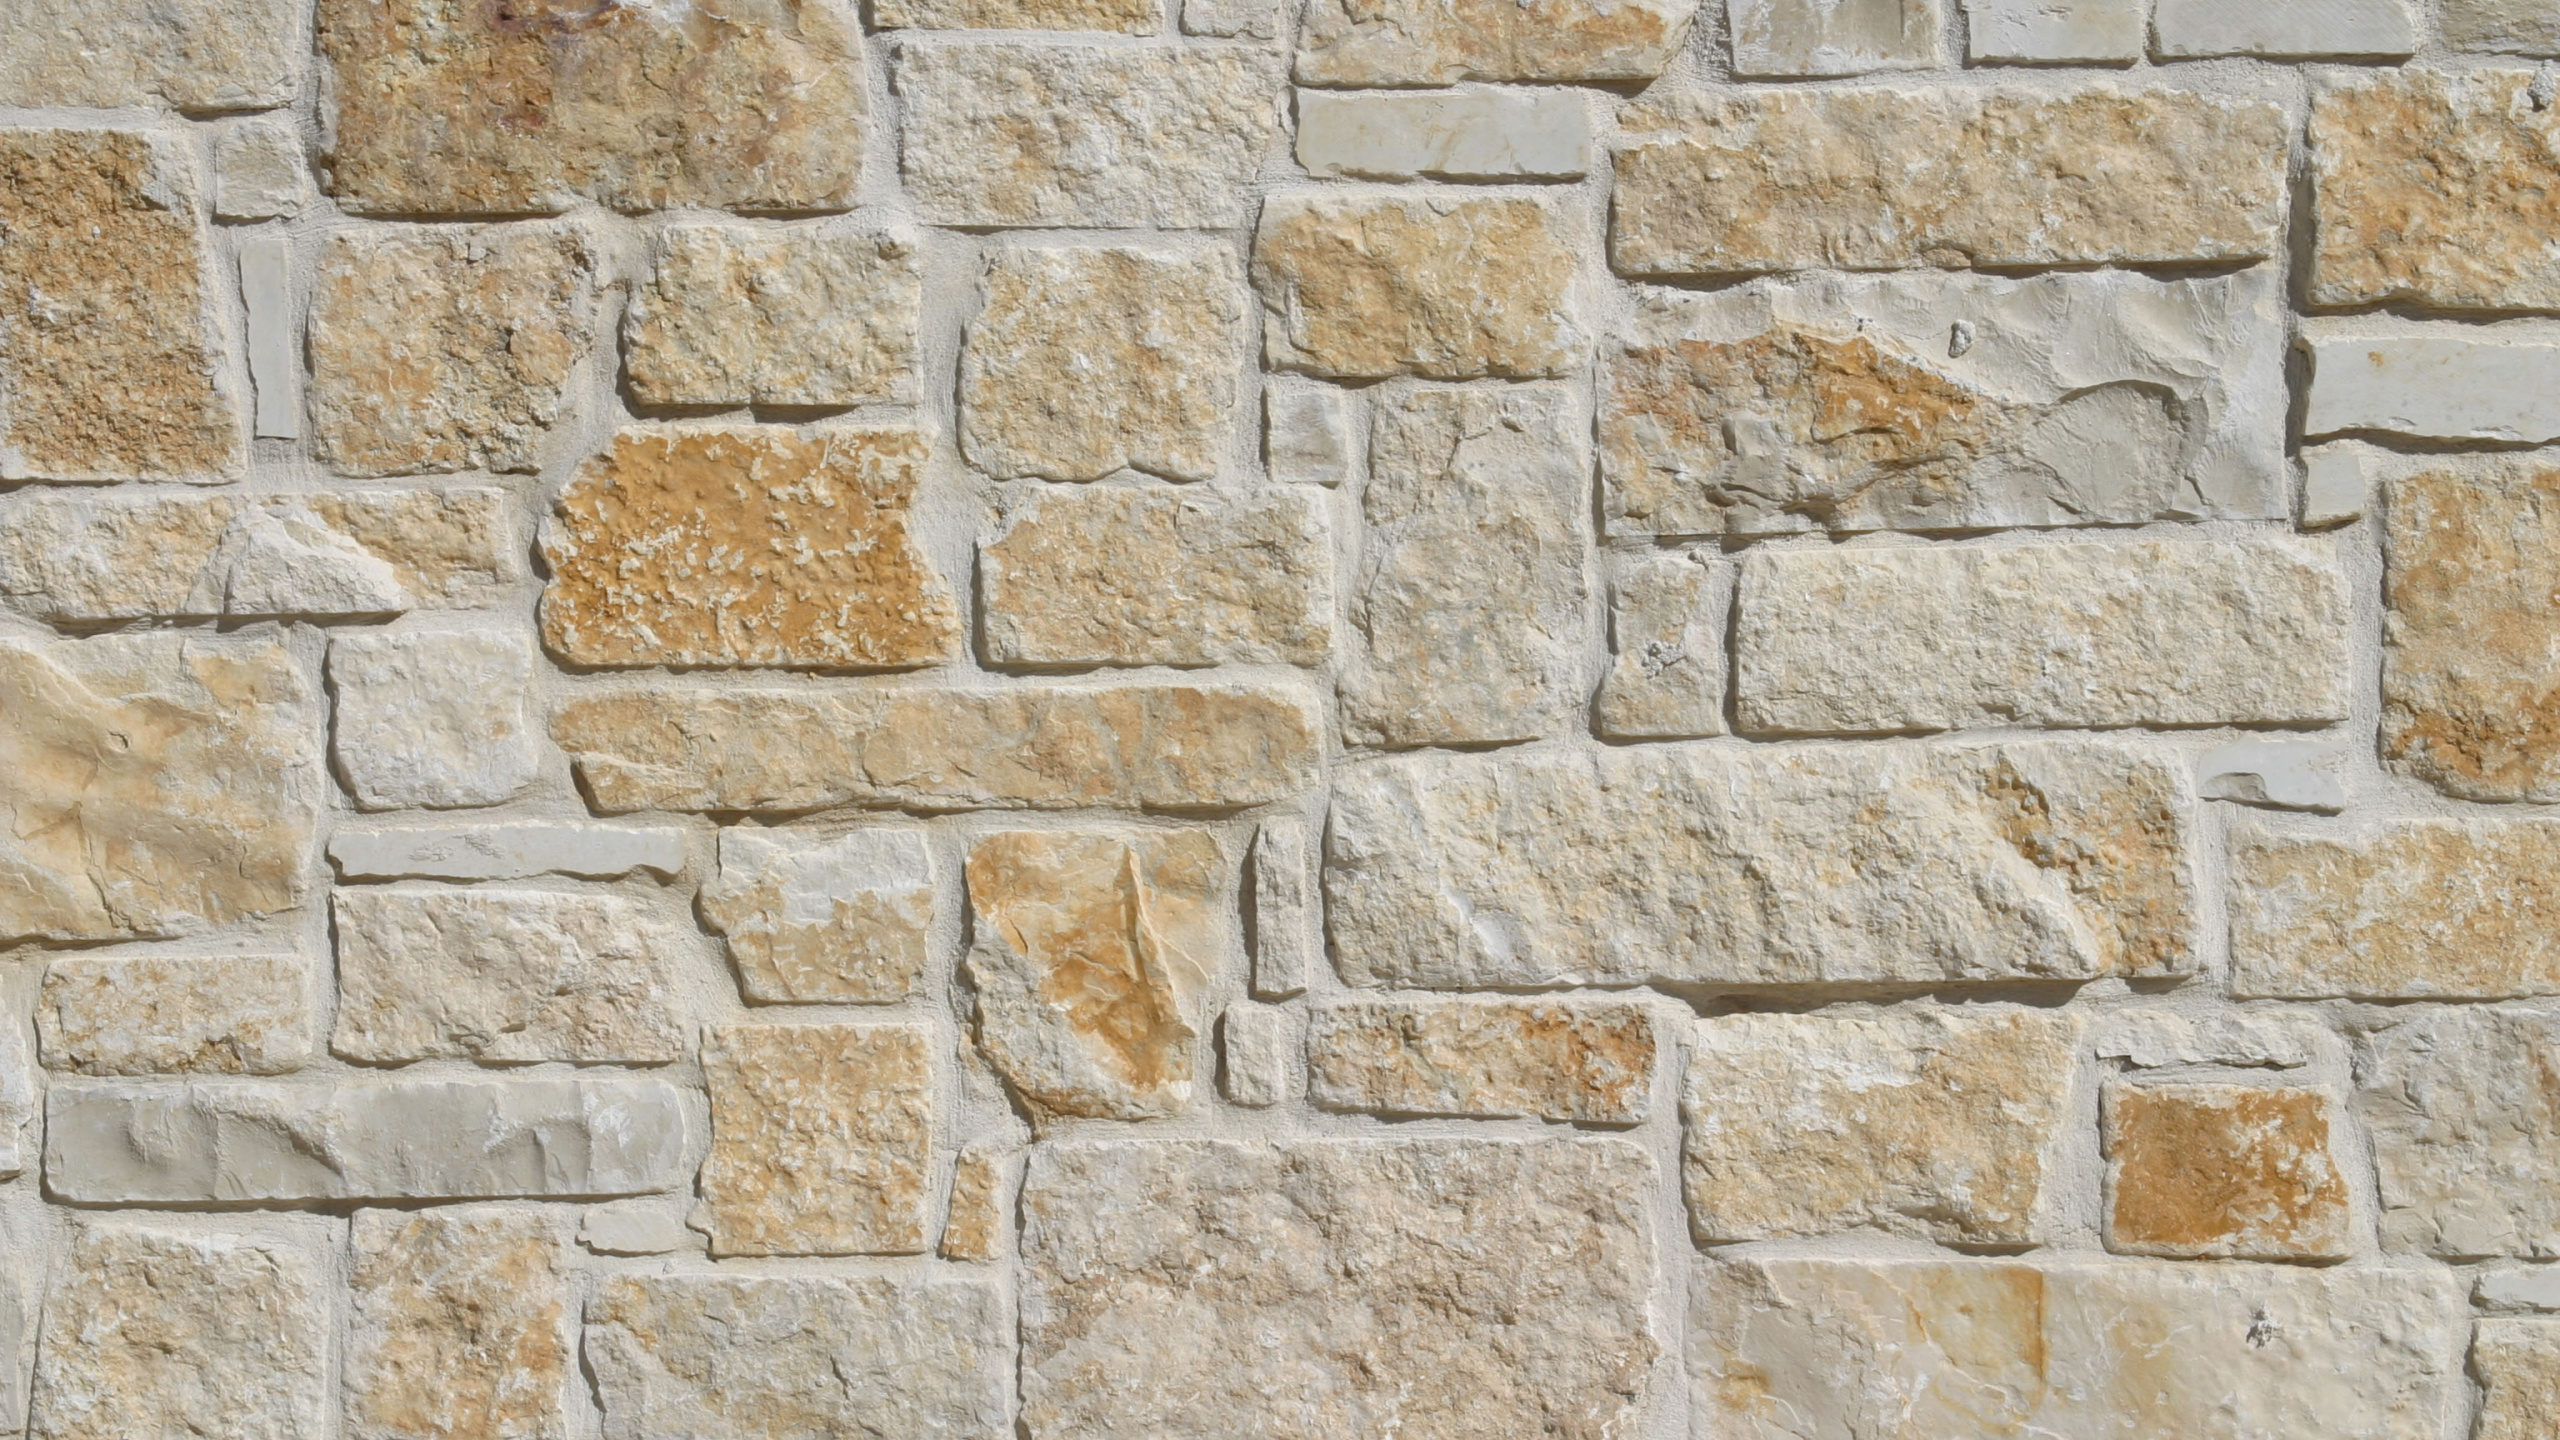 石灰岩, 石饰面, 砖, 石壁, 砌砖 壁纸 2560x1440 允许